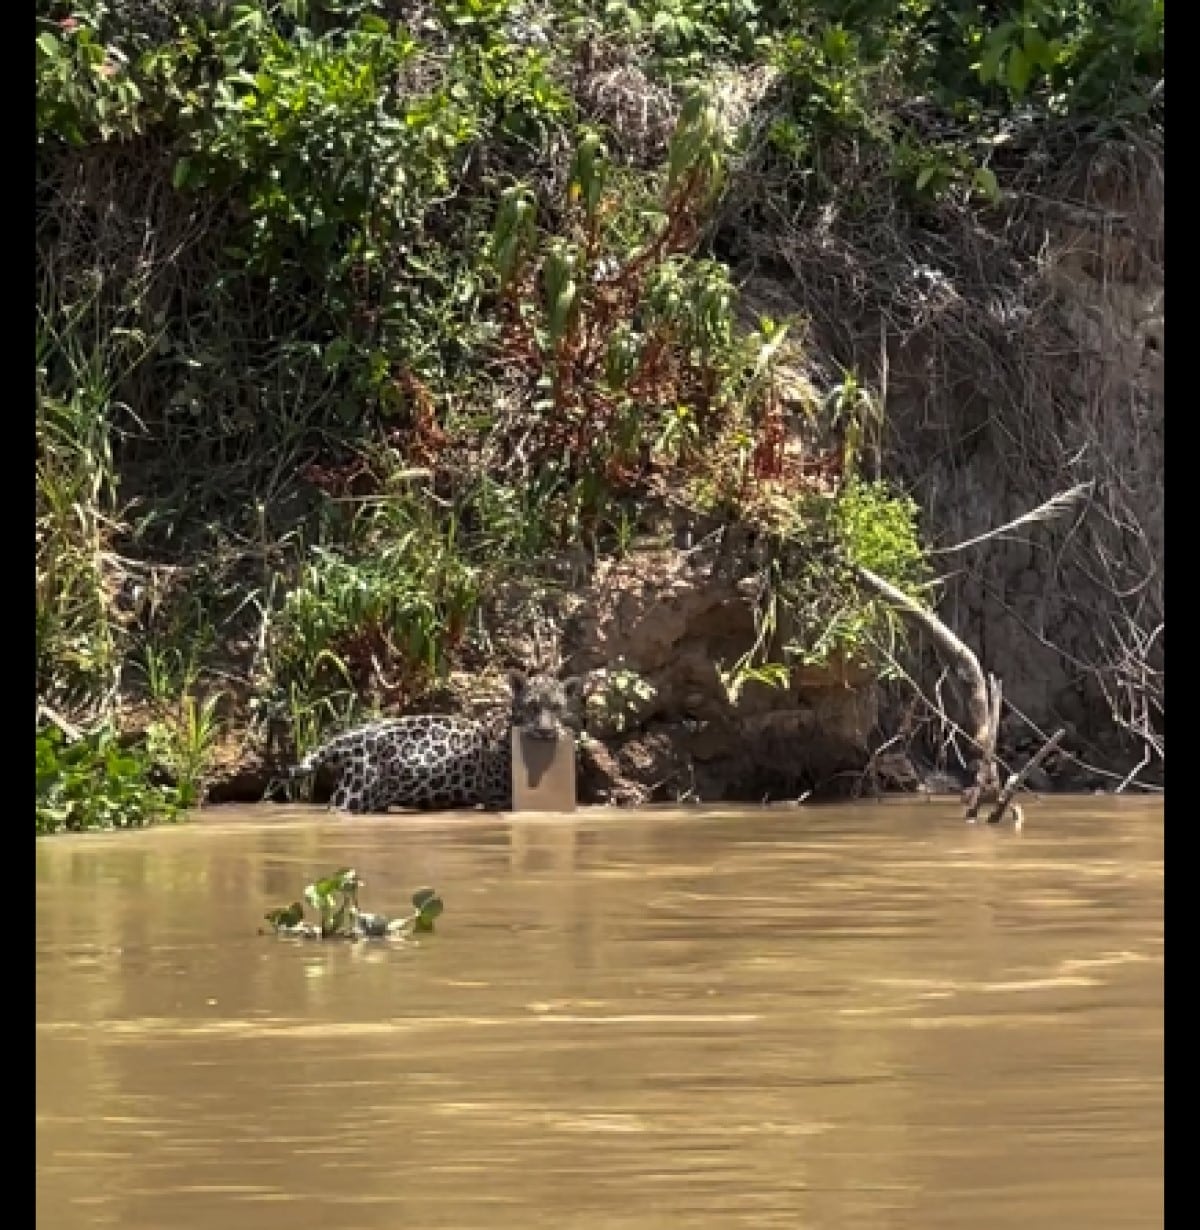 Filhotes de onça-pintada são flagrados brincando com borrachão nas águas do Pantanal